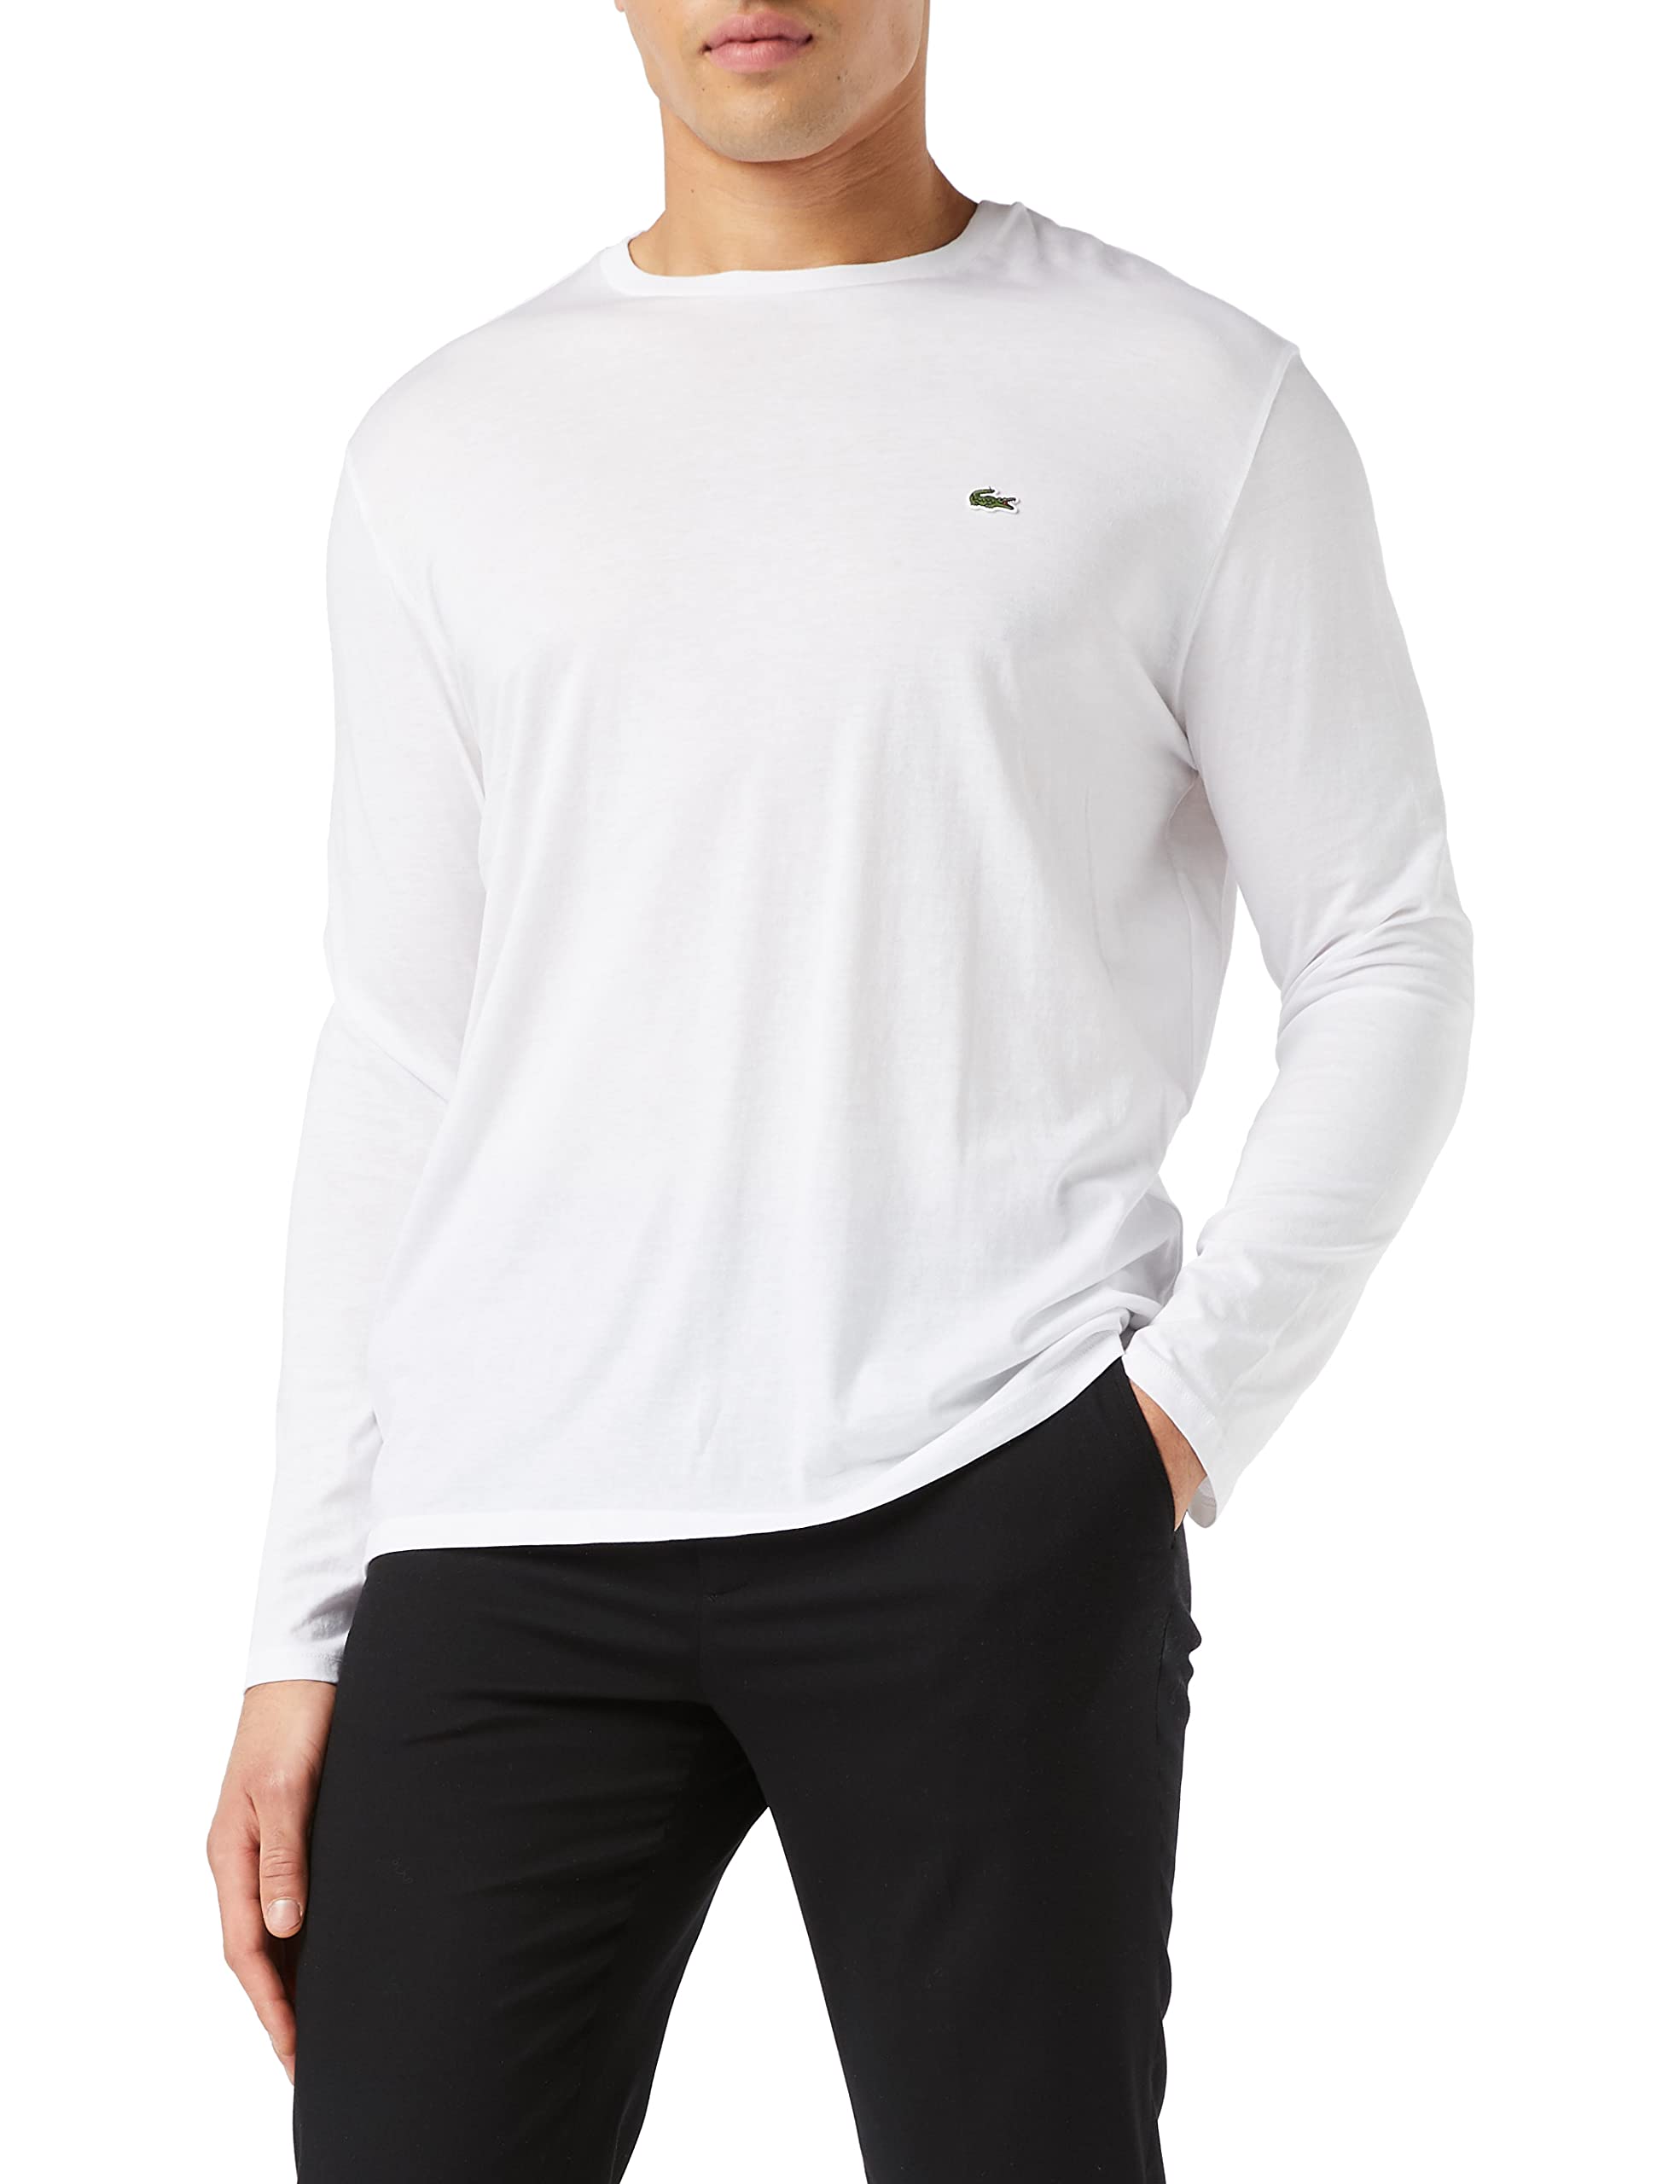 Lacoste Herren T-Shirt TH6712, Weiß (Blanc), X-Large (Herstellergröße: 6)